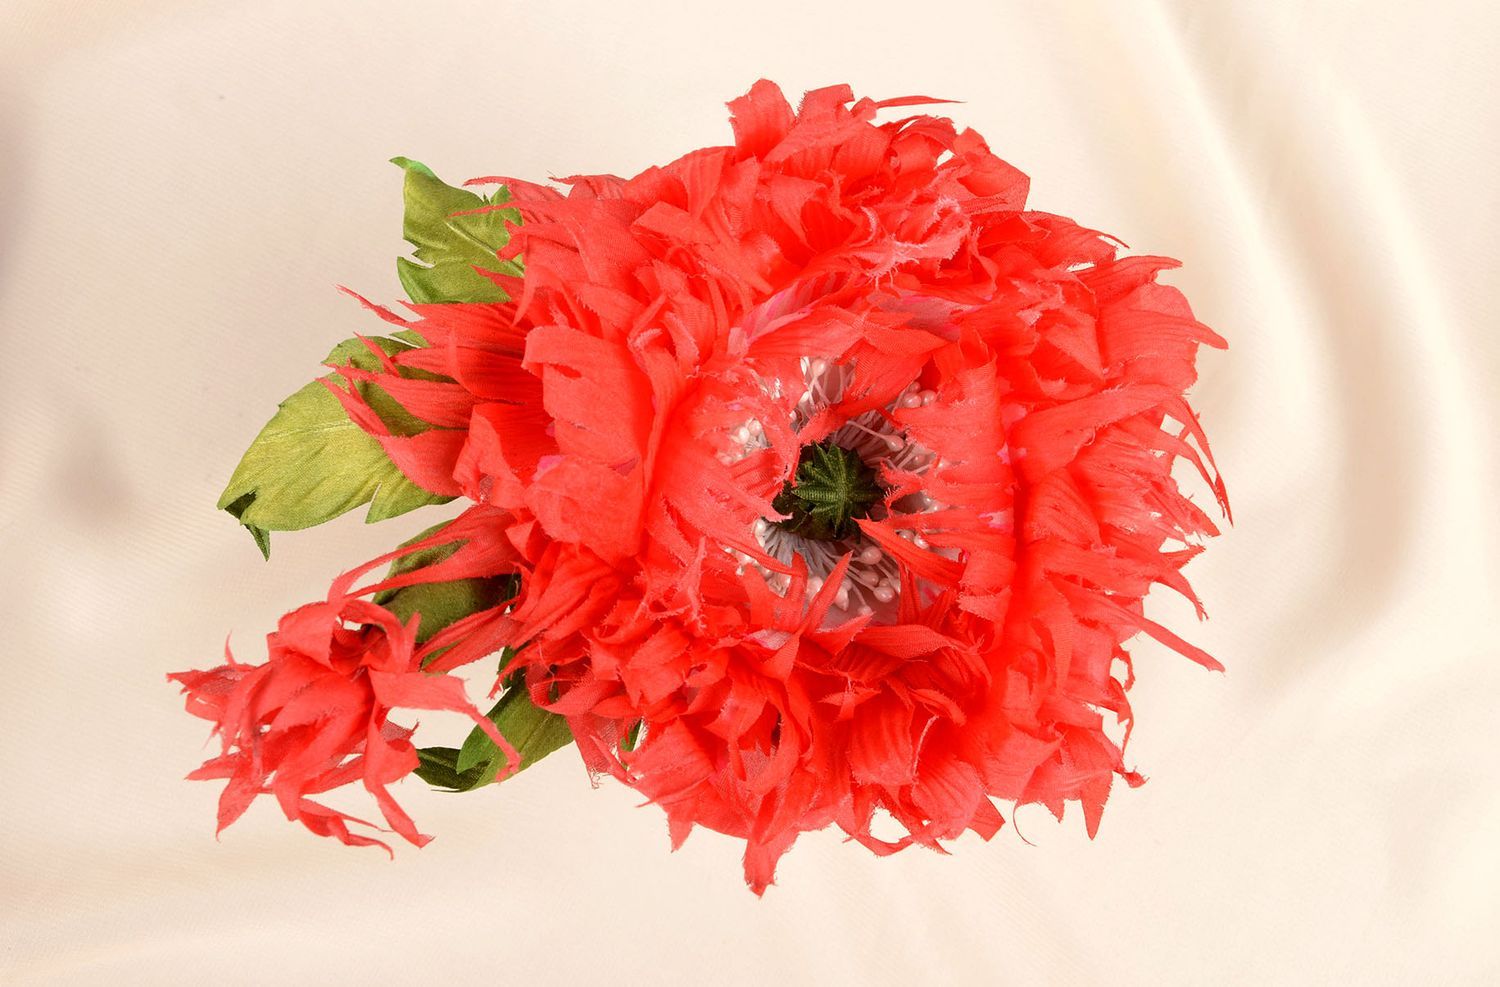 Брошь ручной работы красная брошь-цветок авторское дизайнерское украшение фото 5